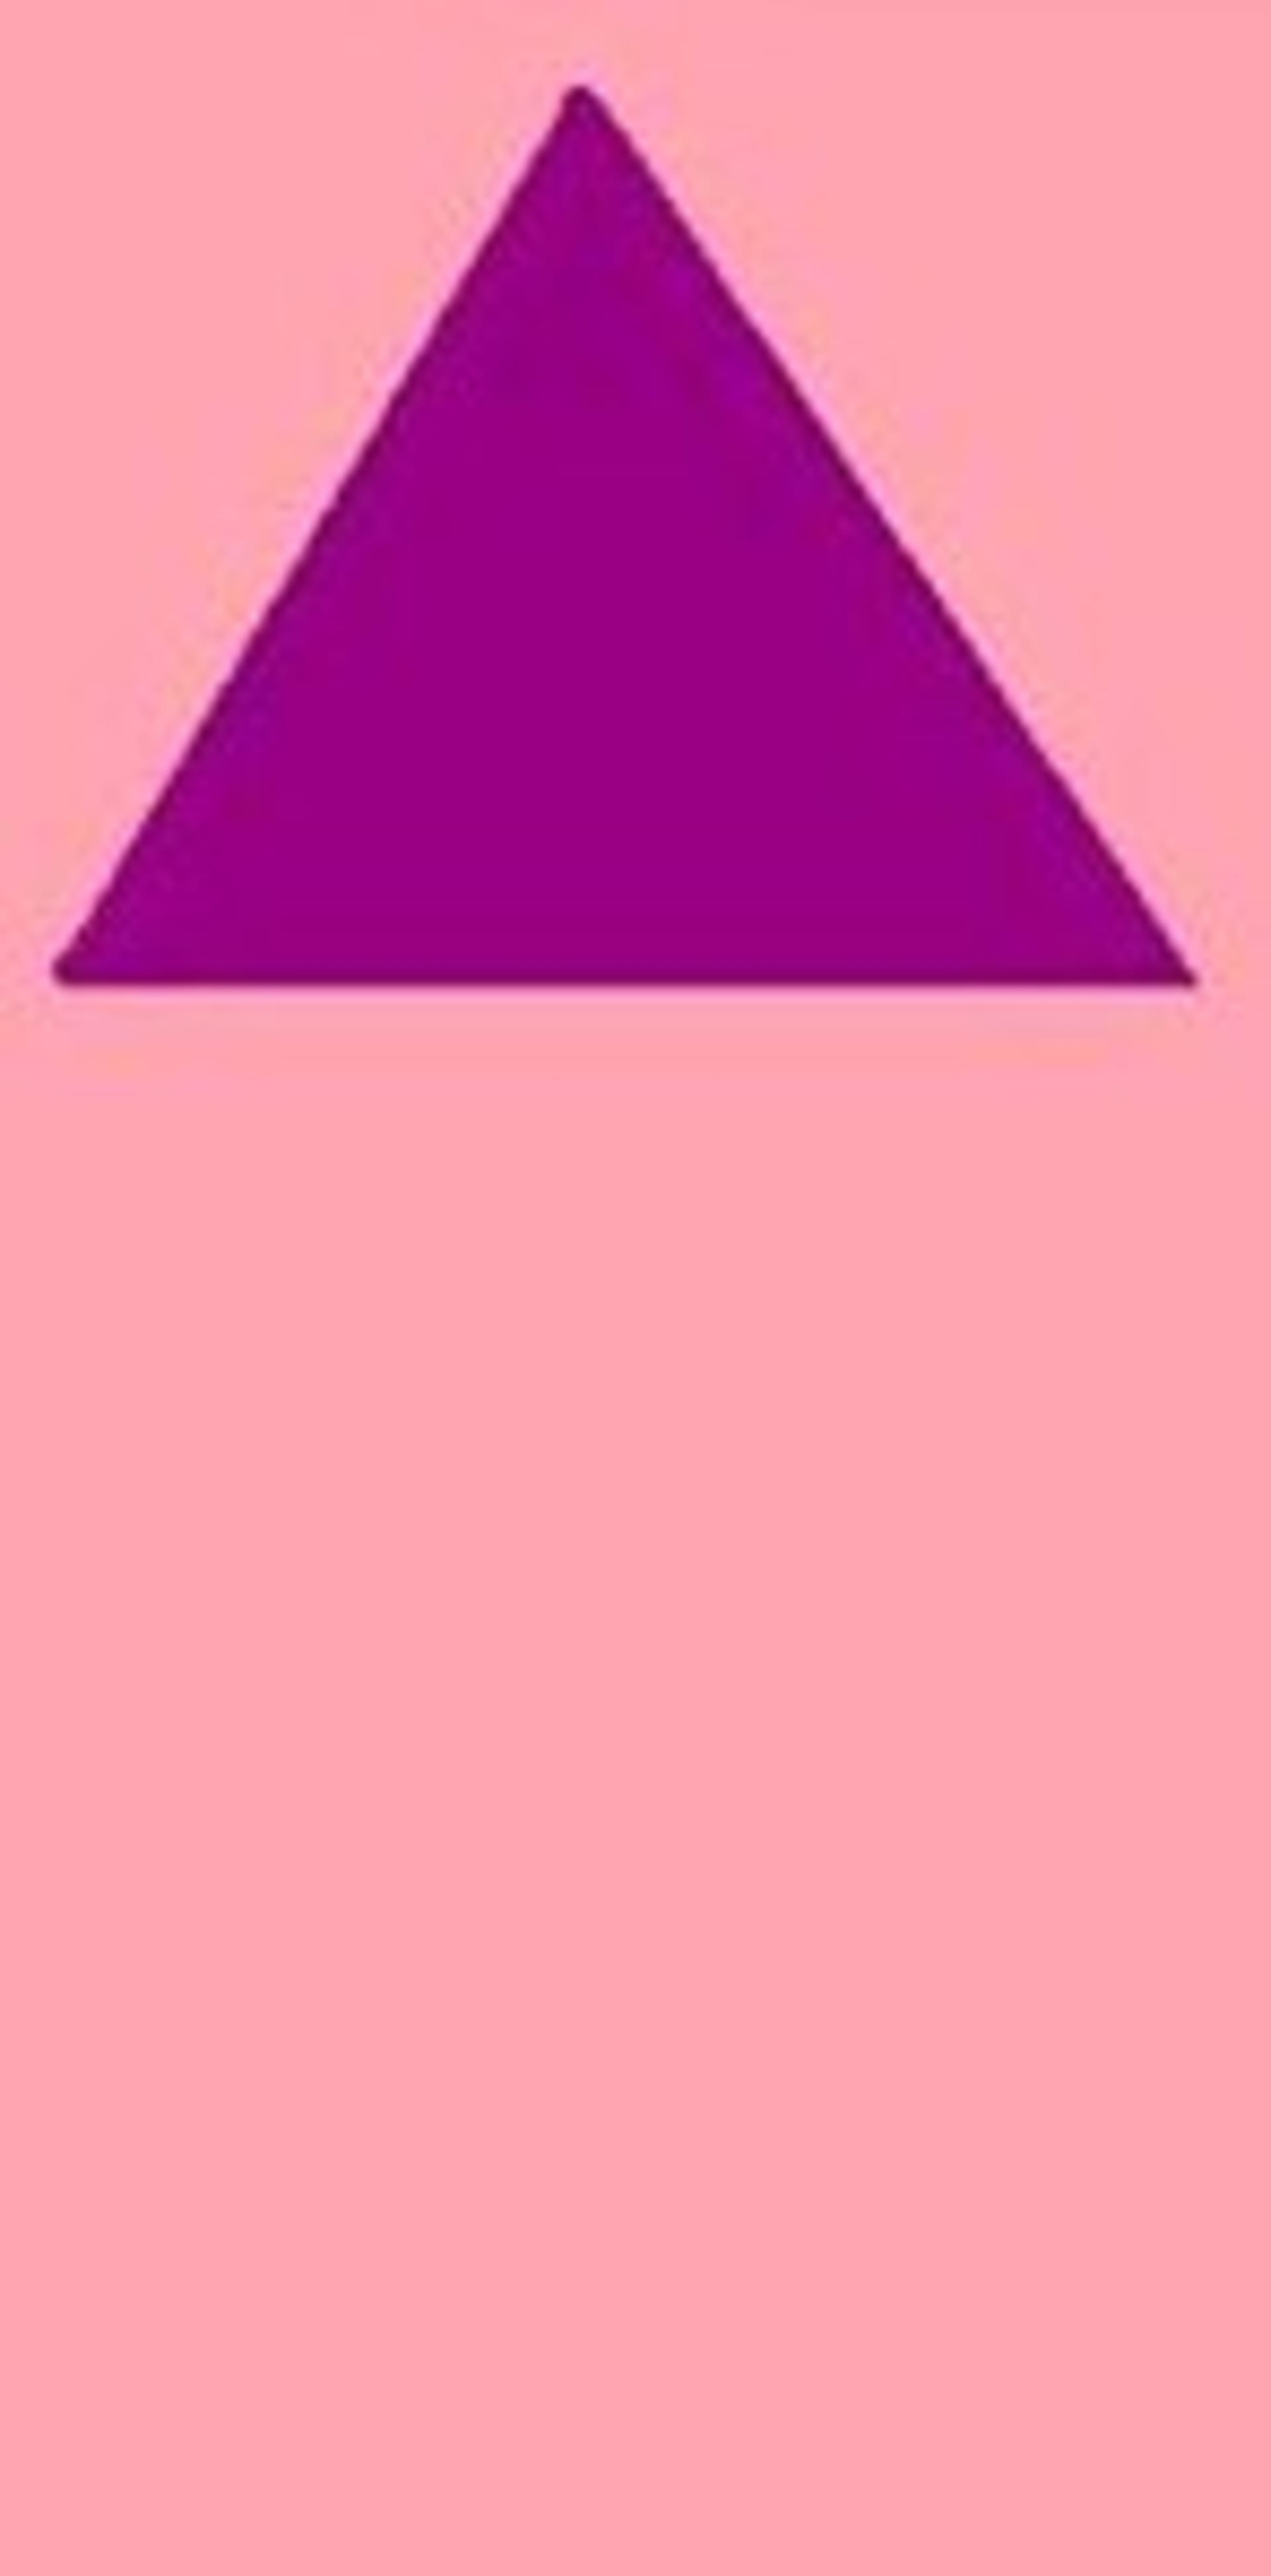 fialovy trojuhelnik